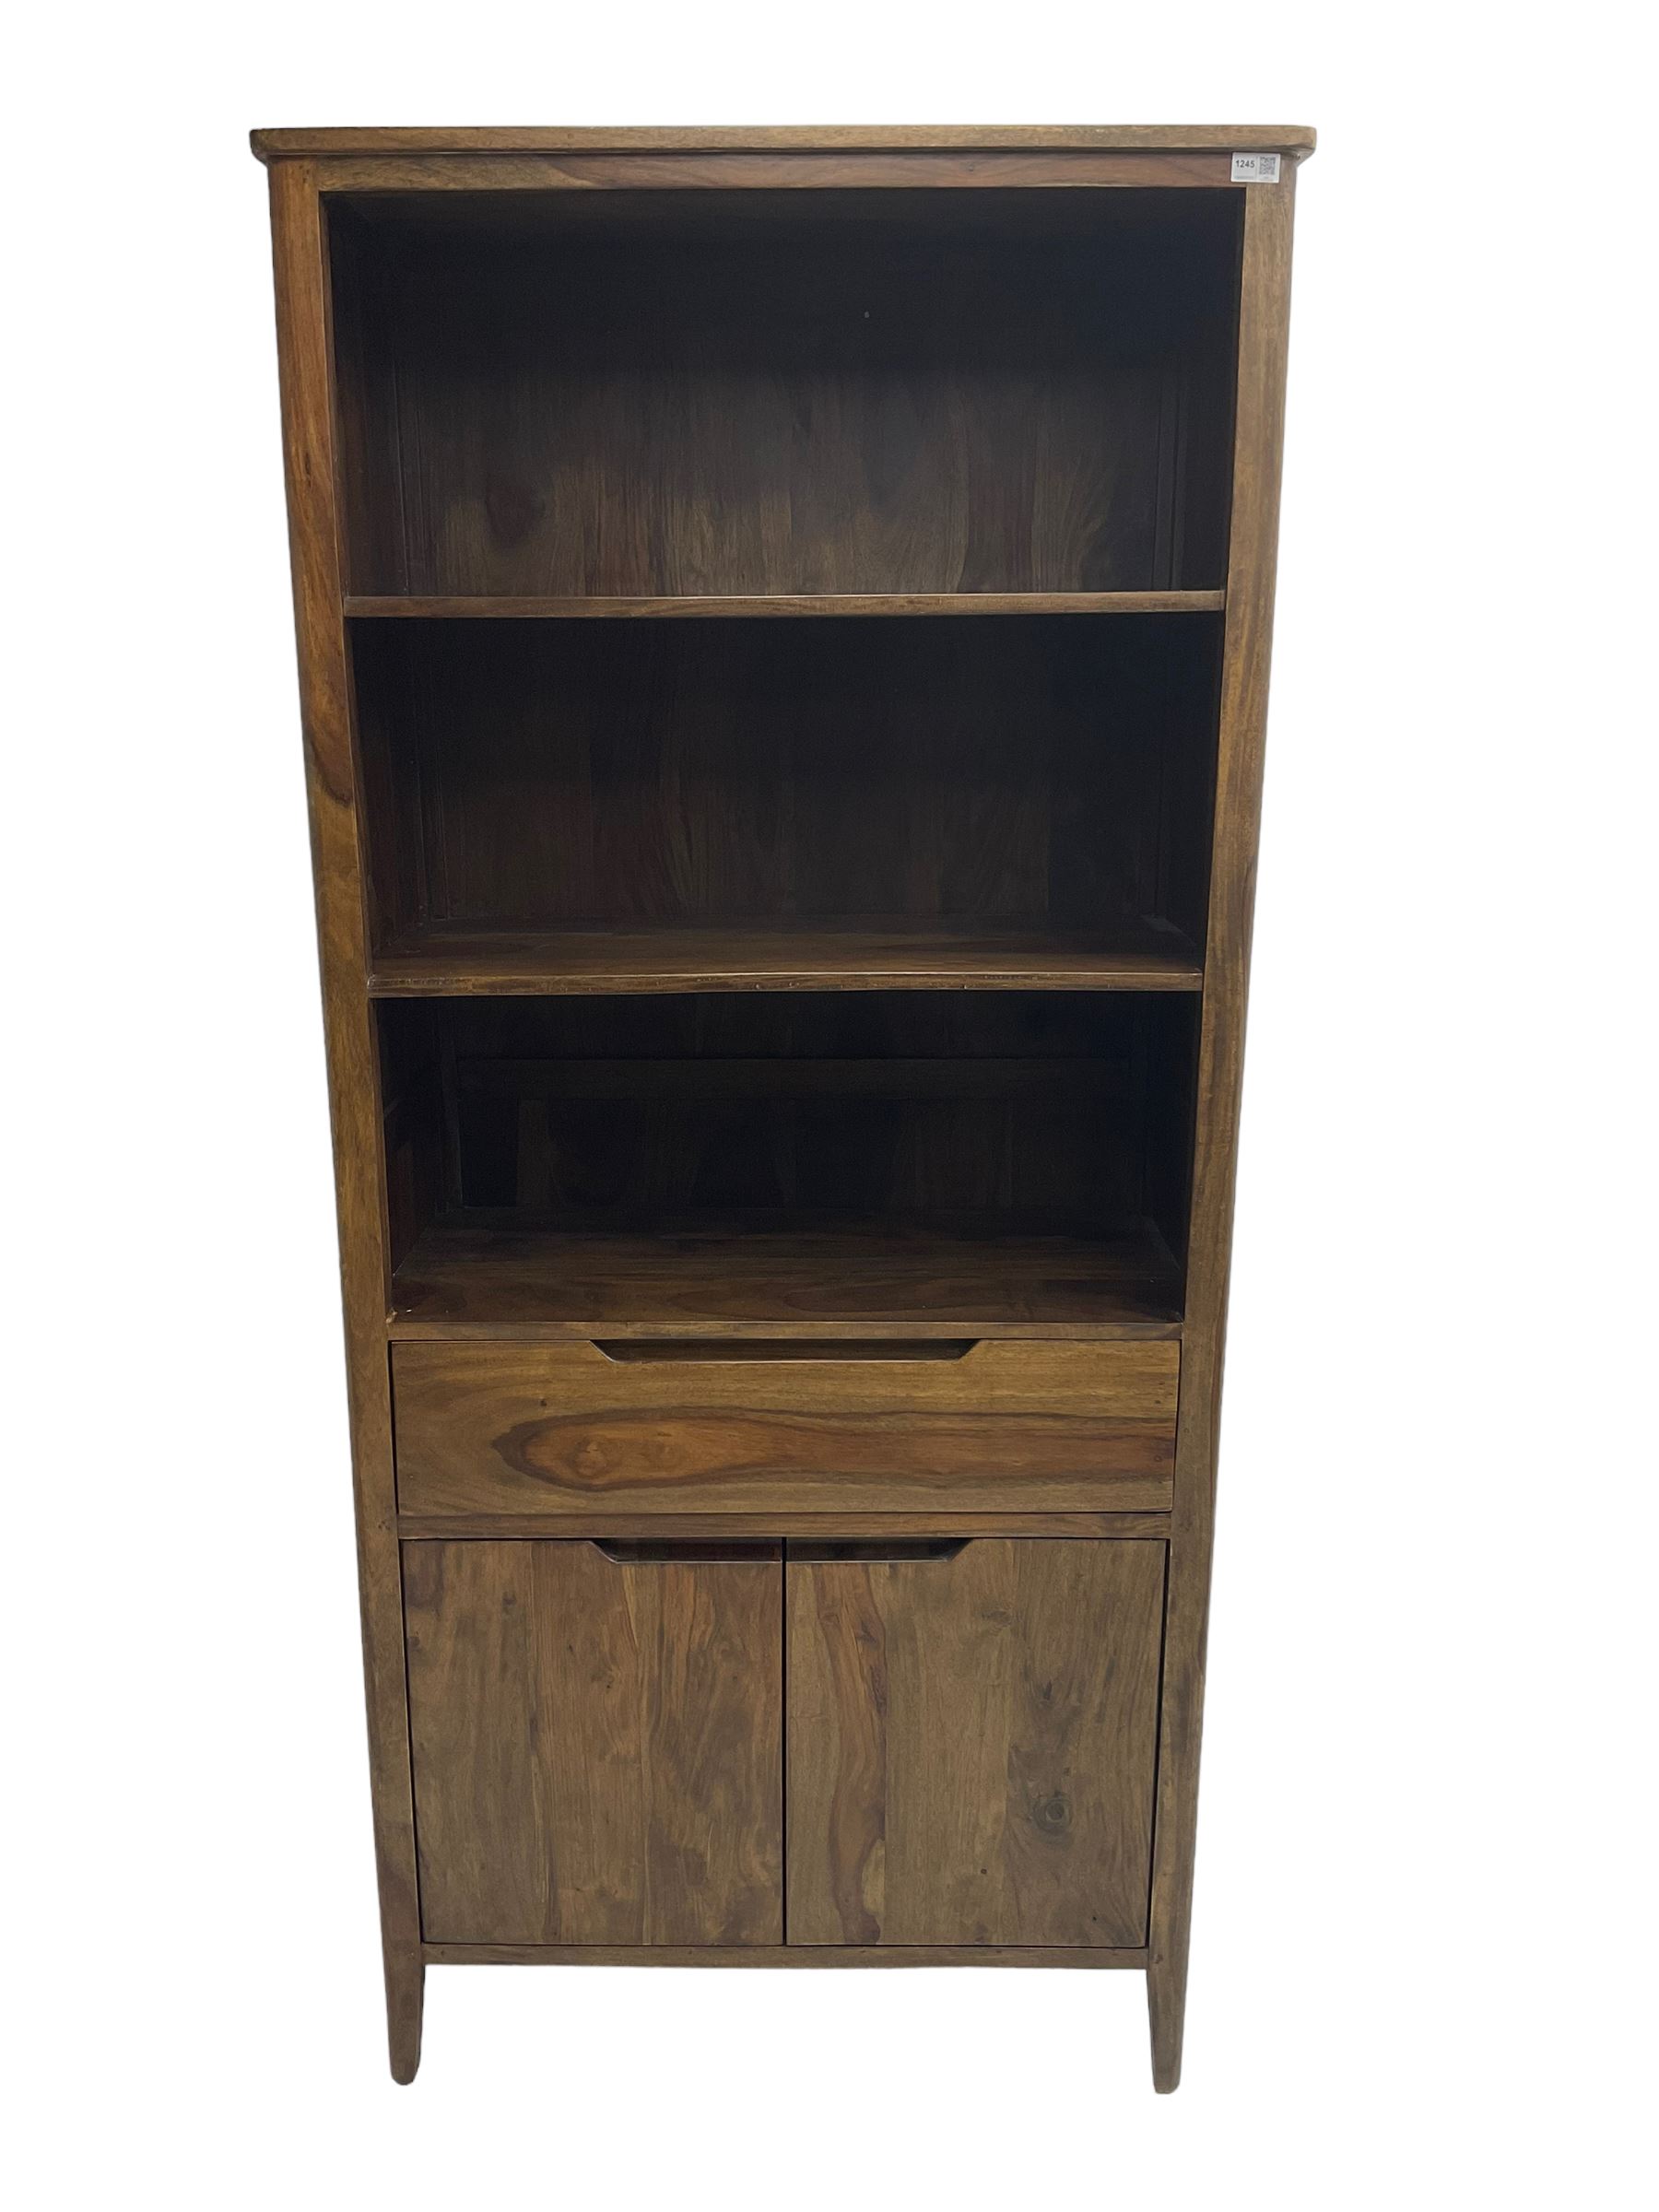 Hardwood bookcase